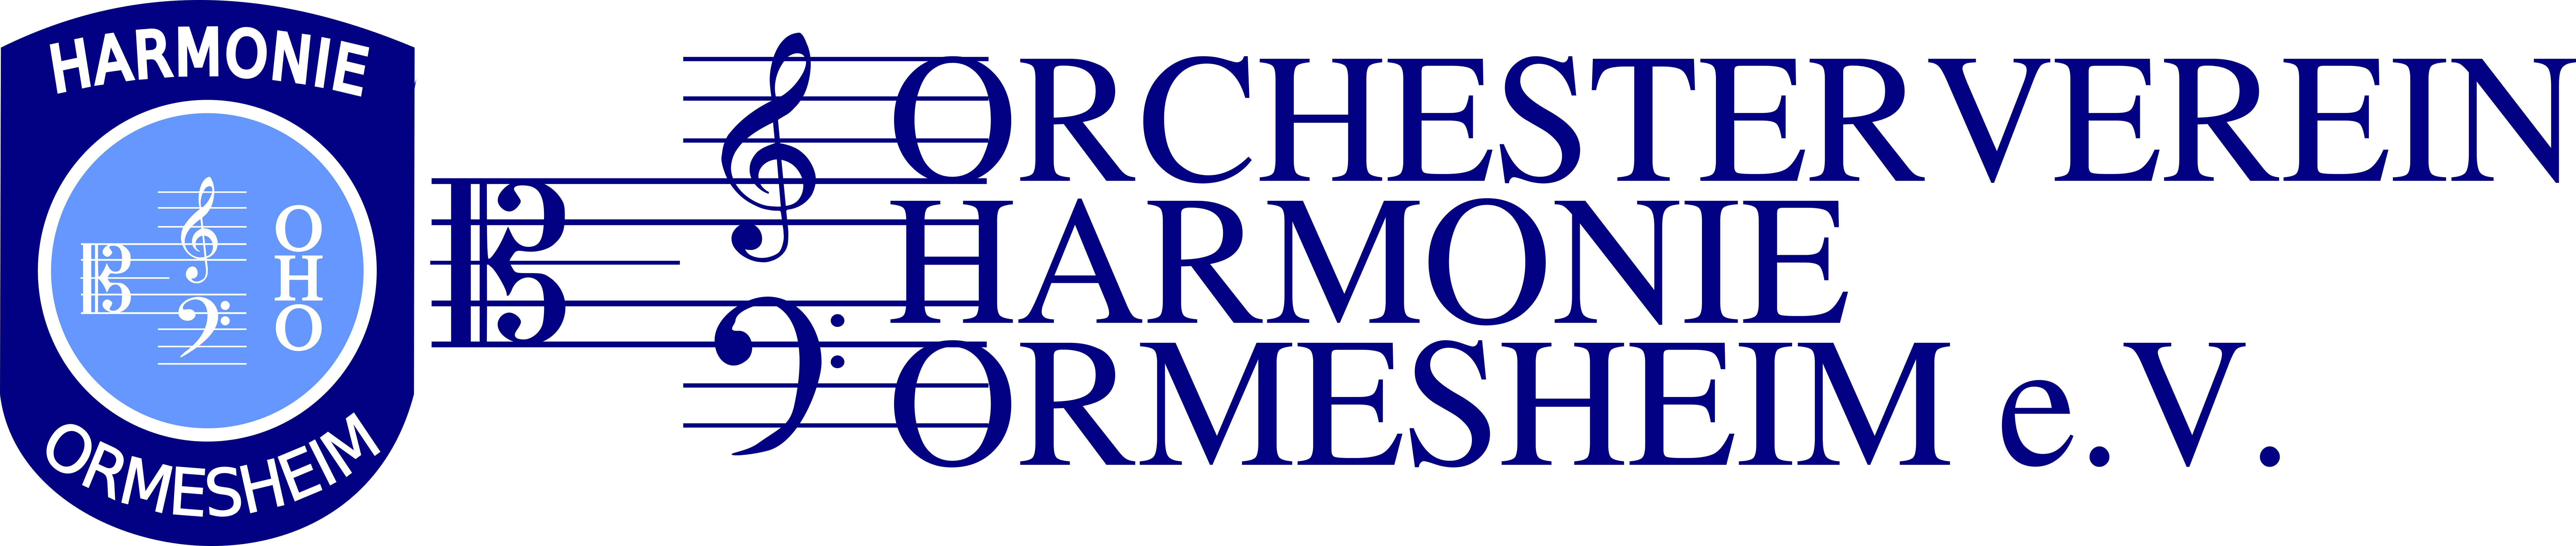 Orchesterverein Harmonie Ormesheim